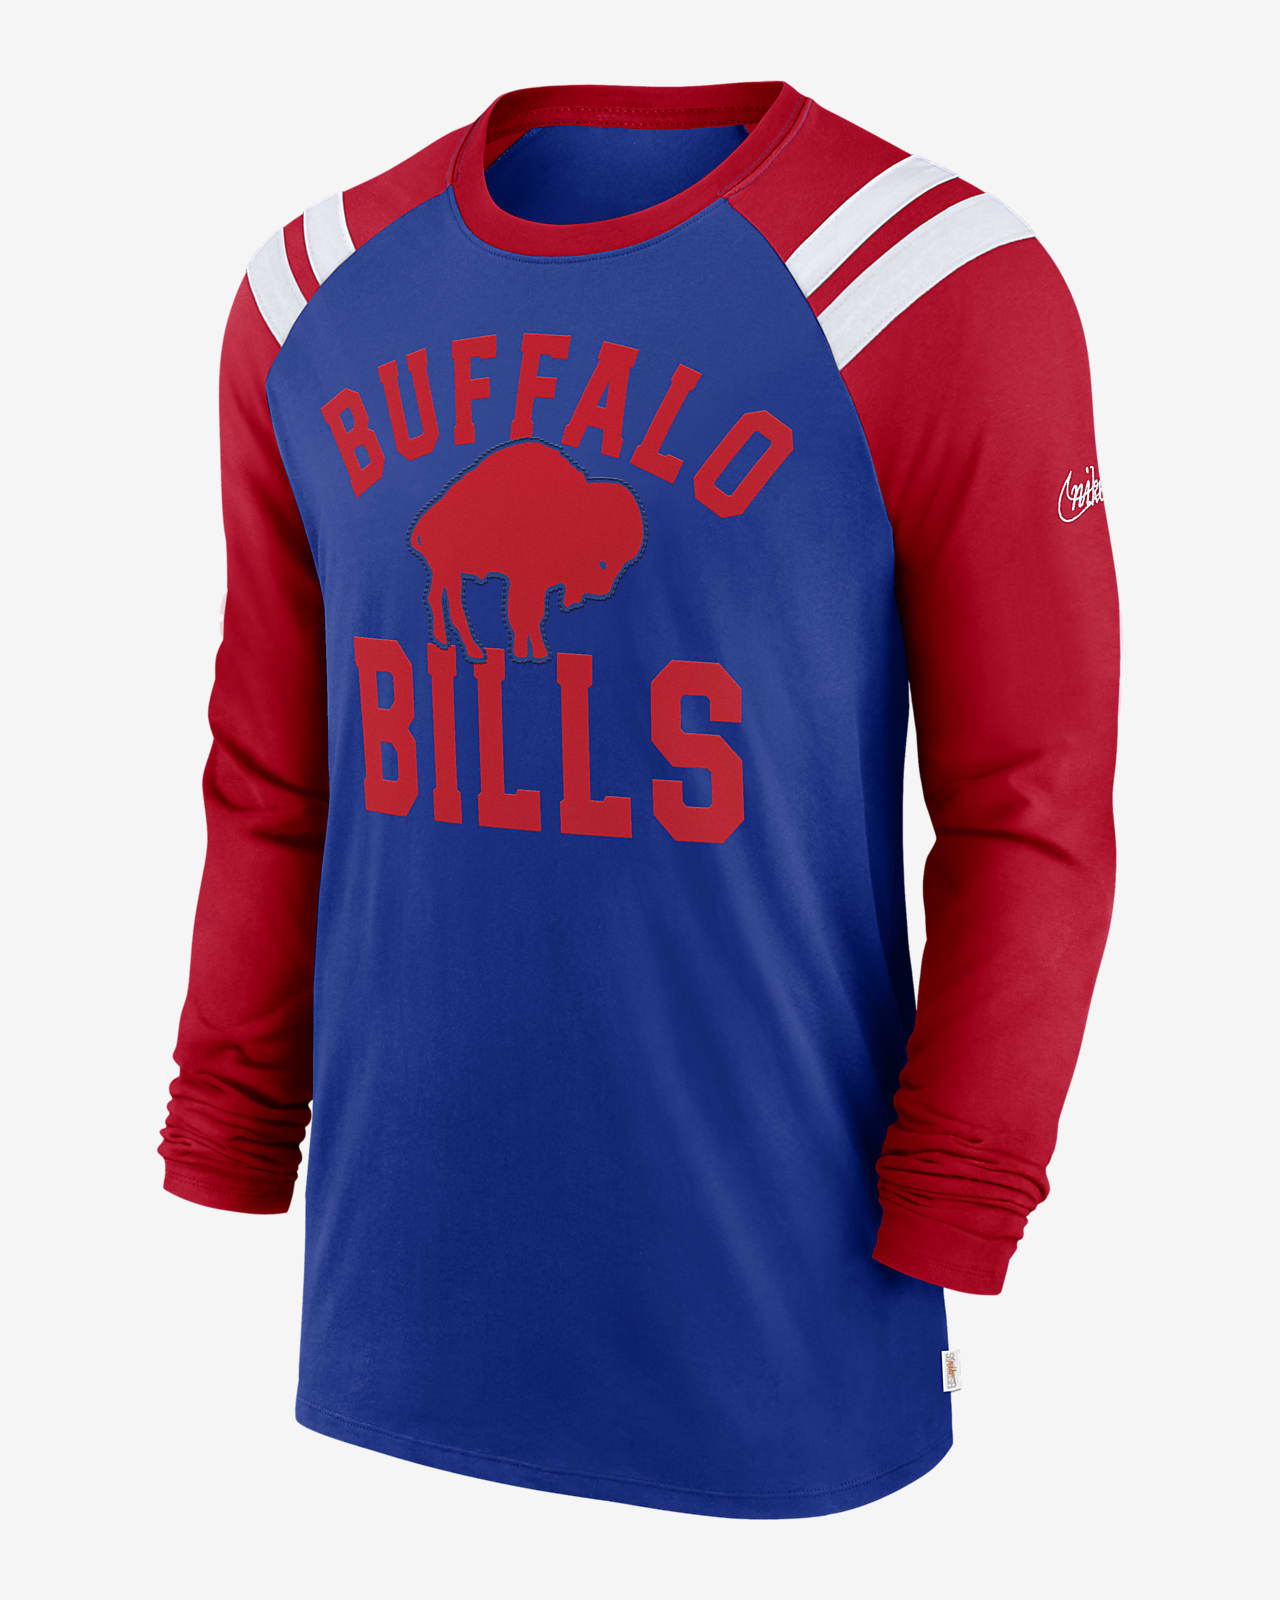 Buffalo Bills Classic Arc Fashion Men's Nike NFL Long-Sleeve T-Shirt